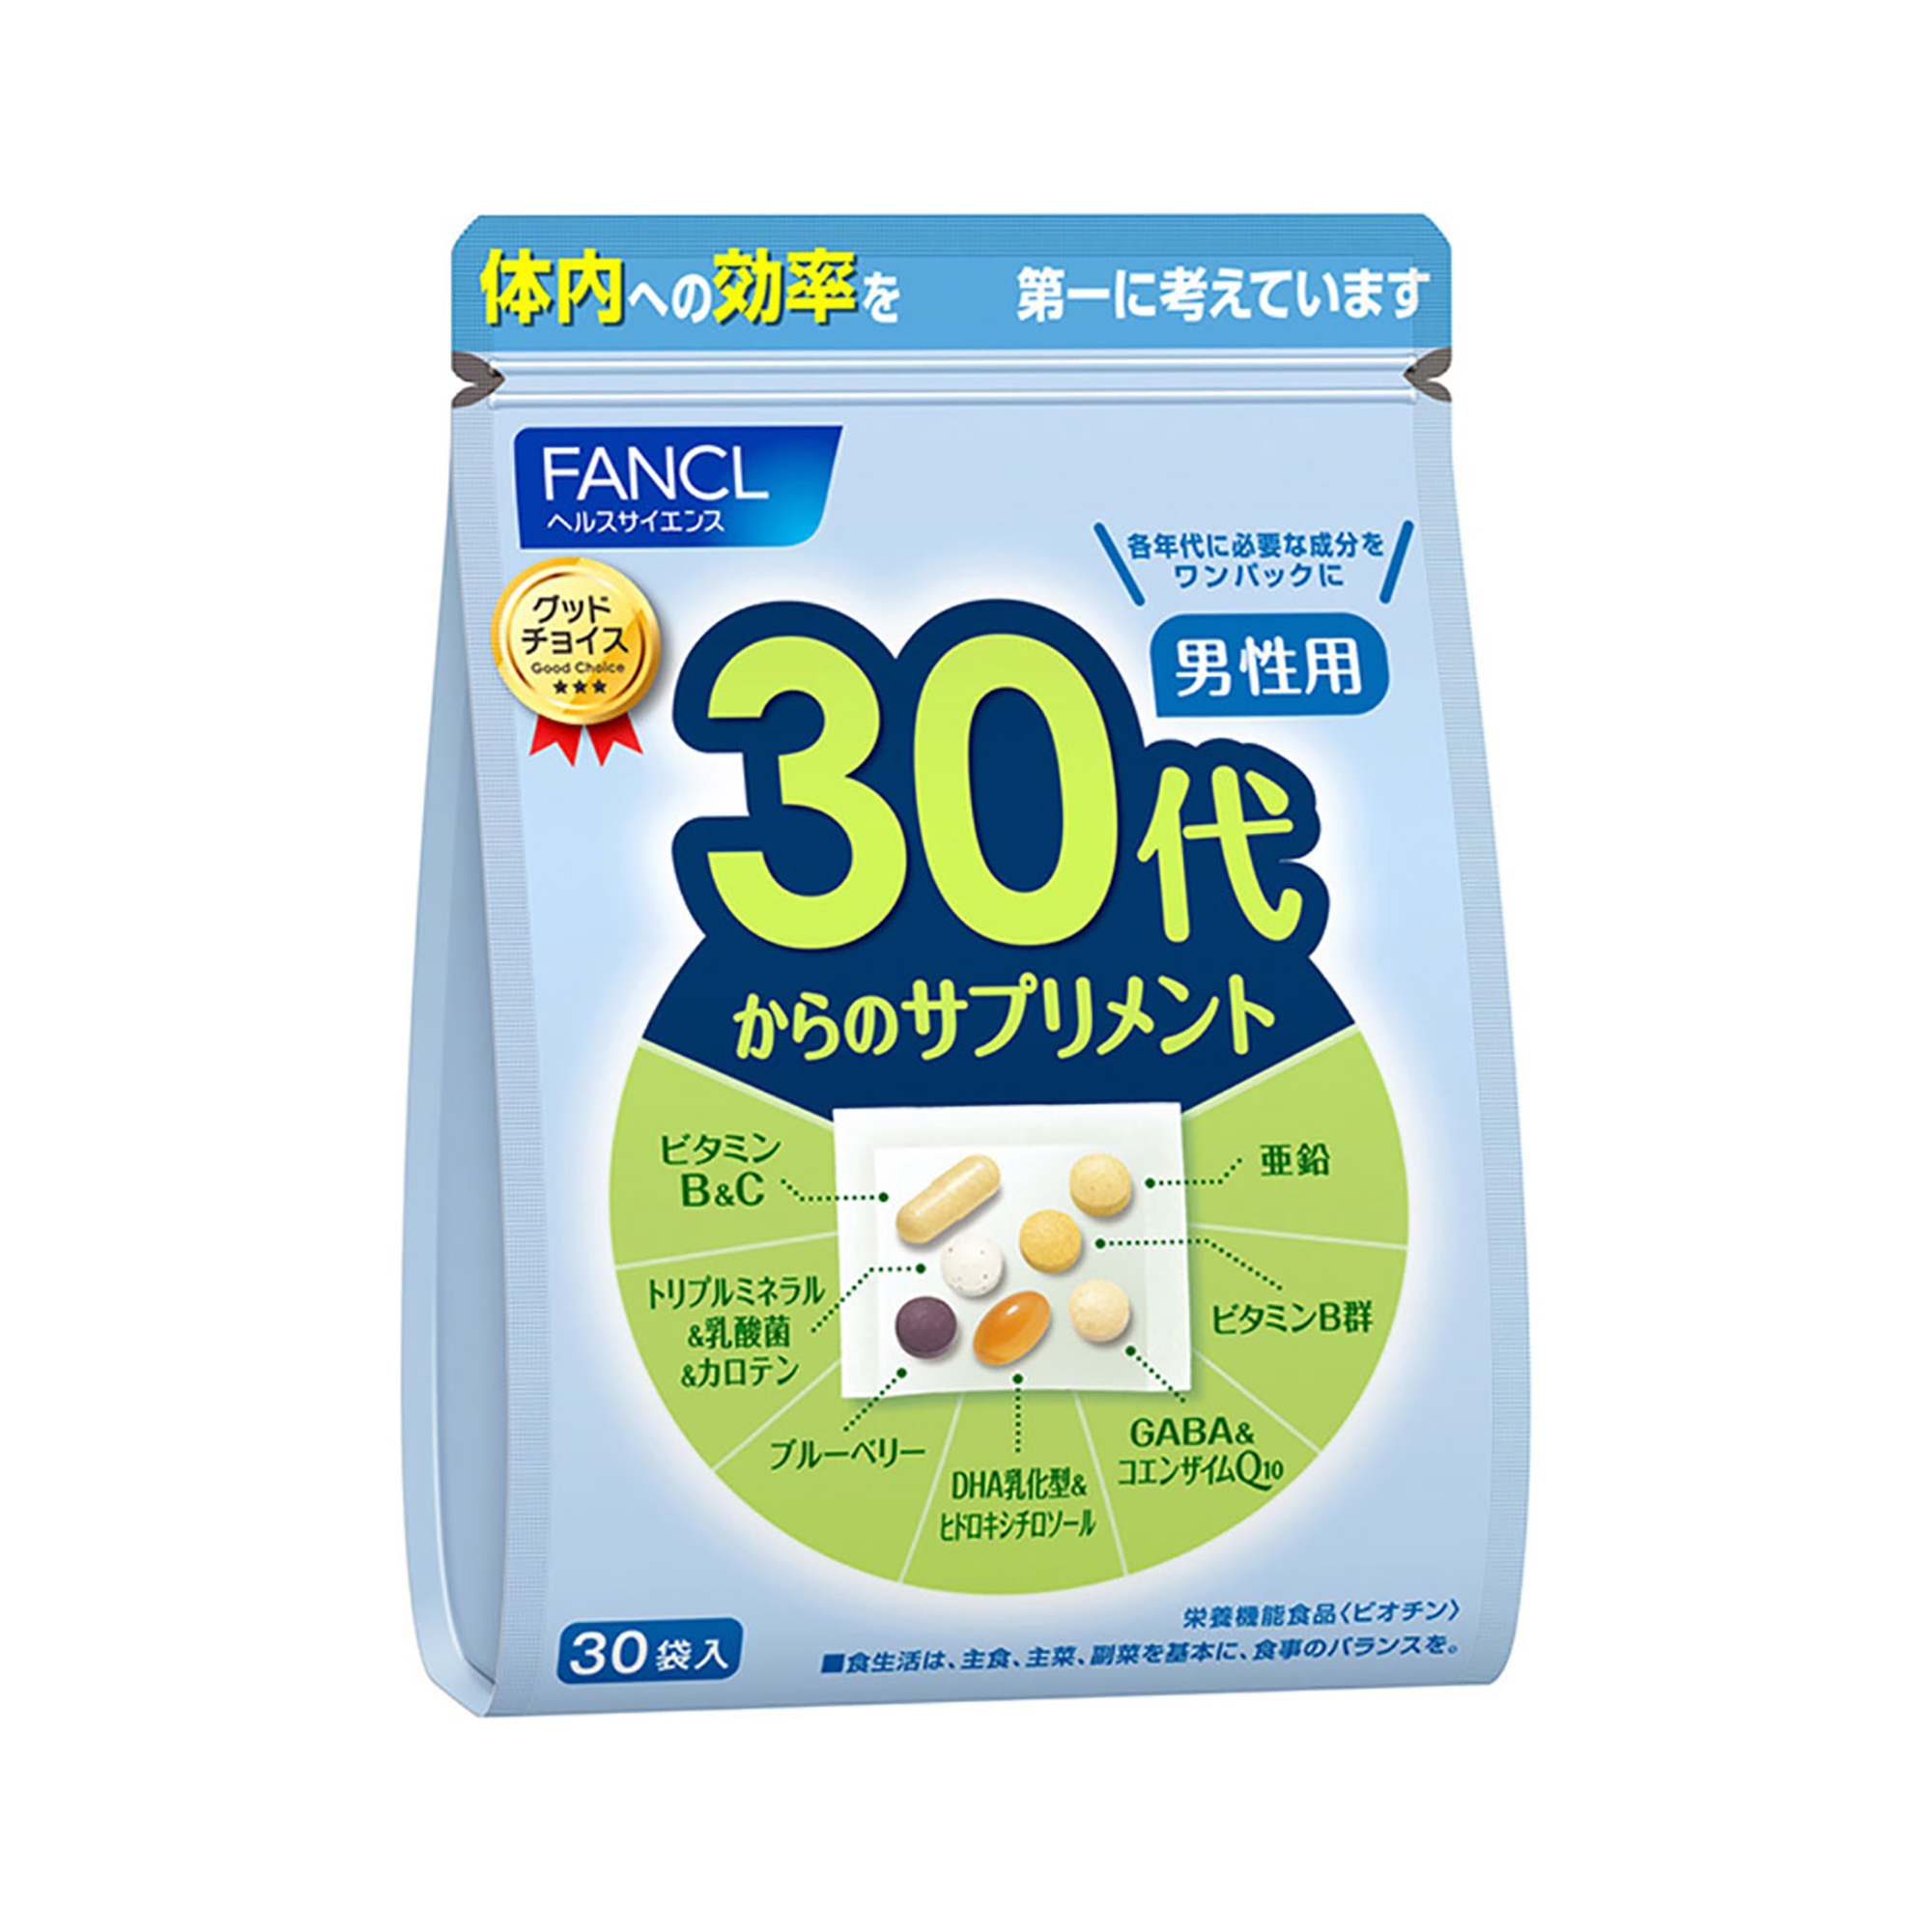 【特卖】FANCL 30代男性综合营养包 7粒×30袋（賞味期限2022/09/30)